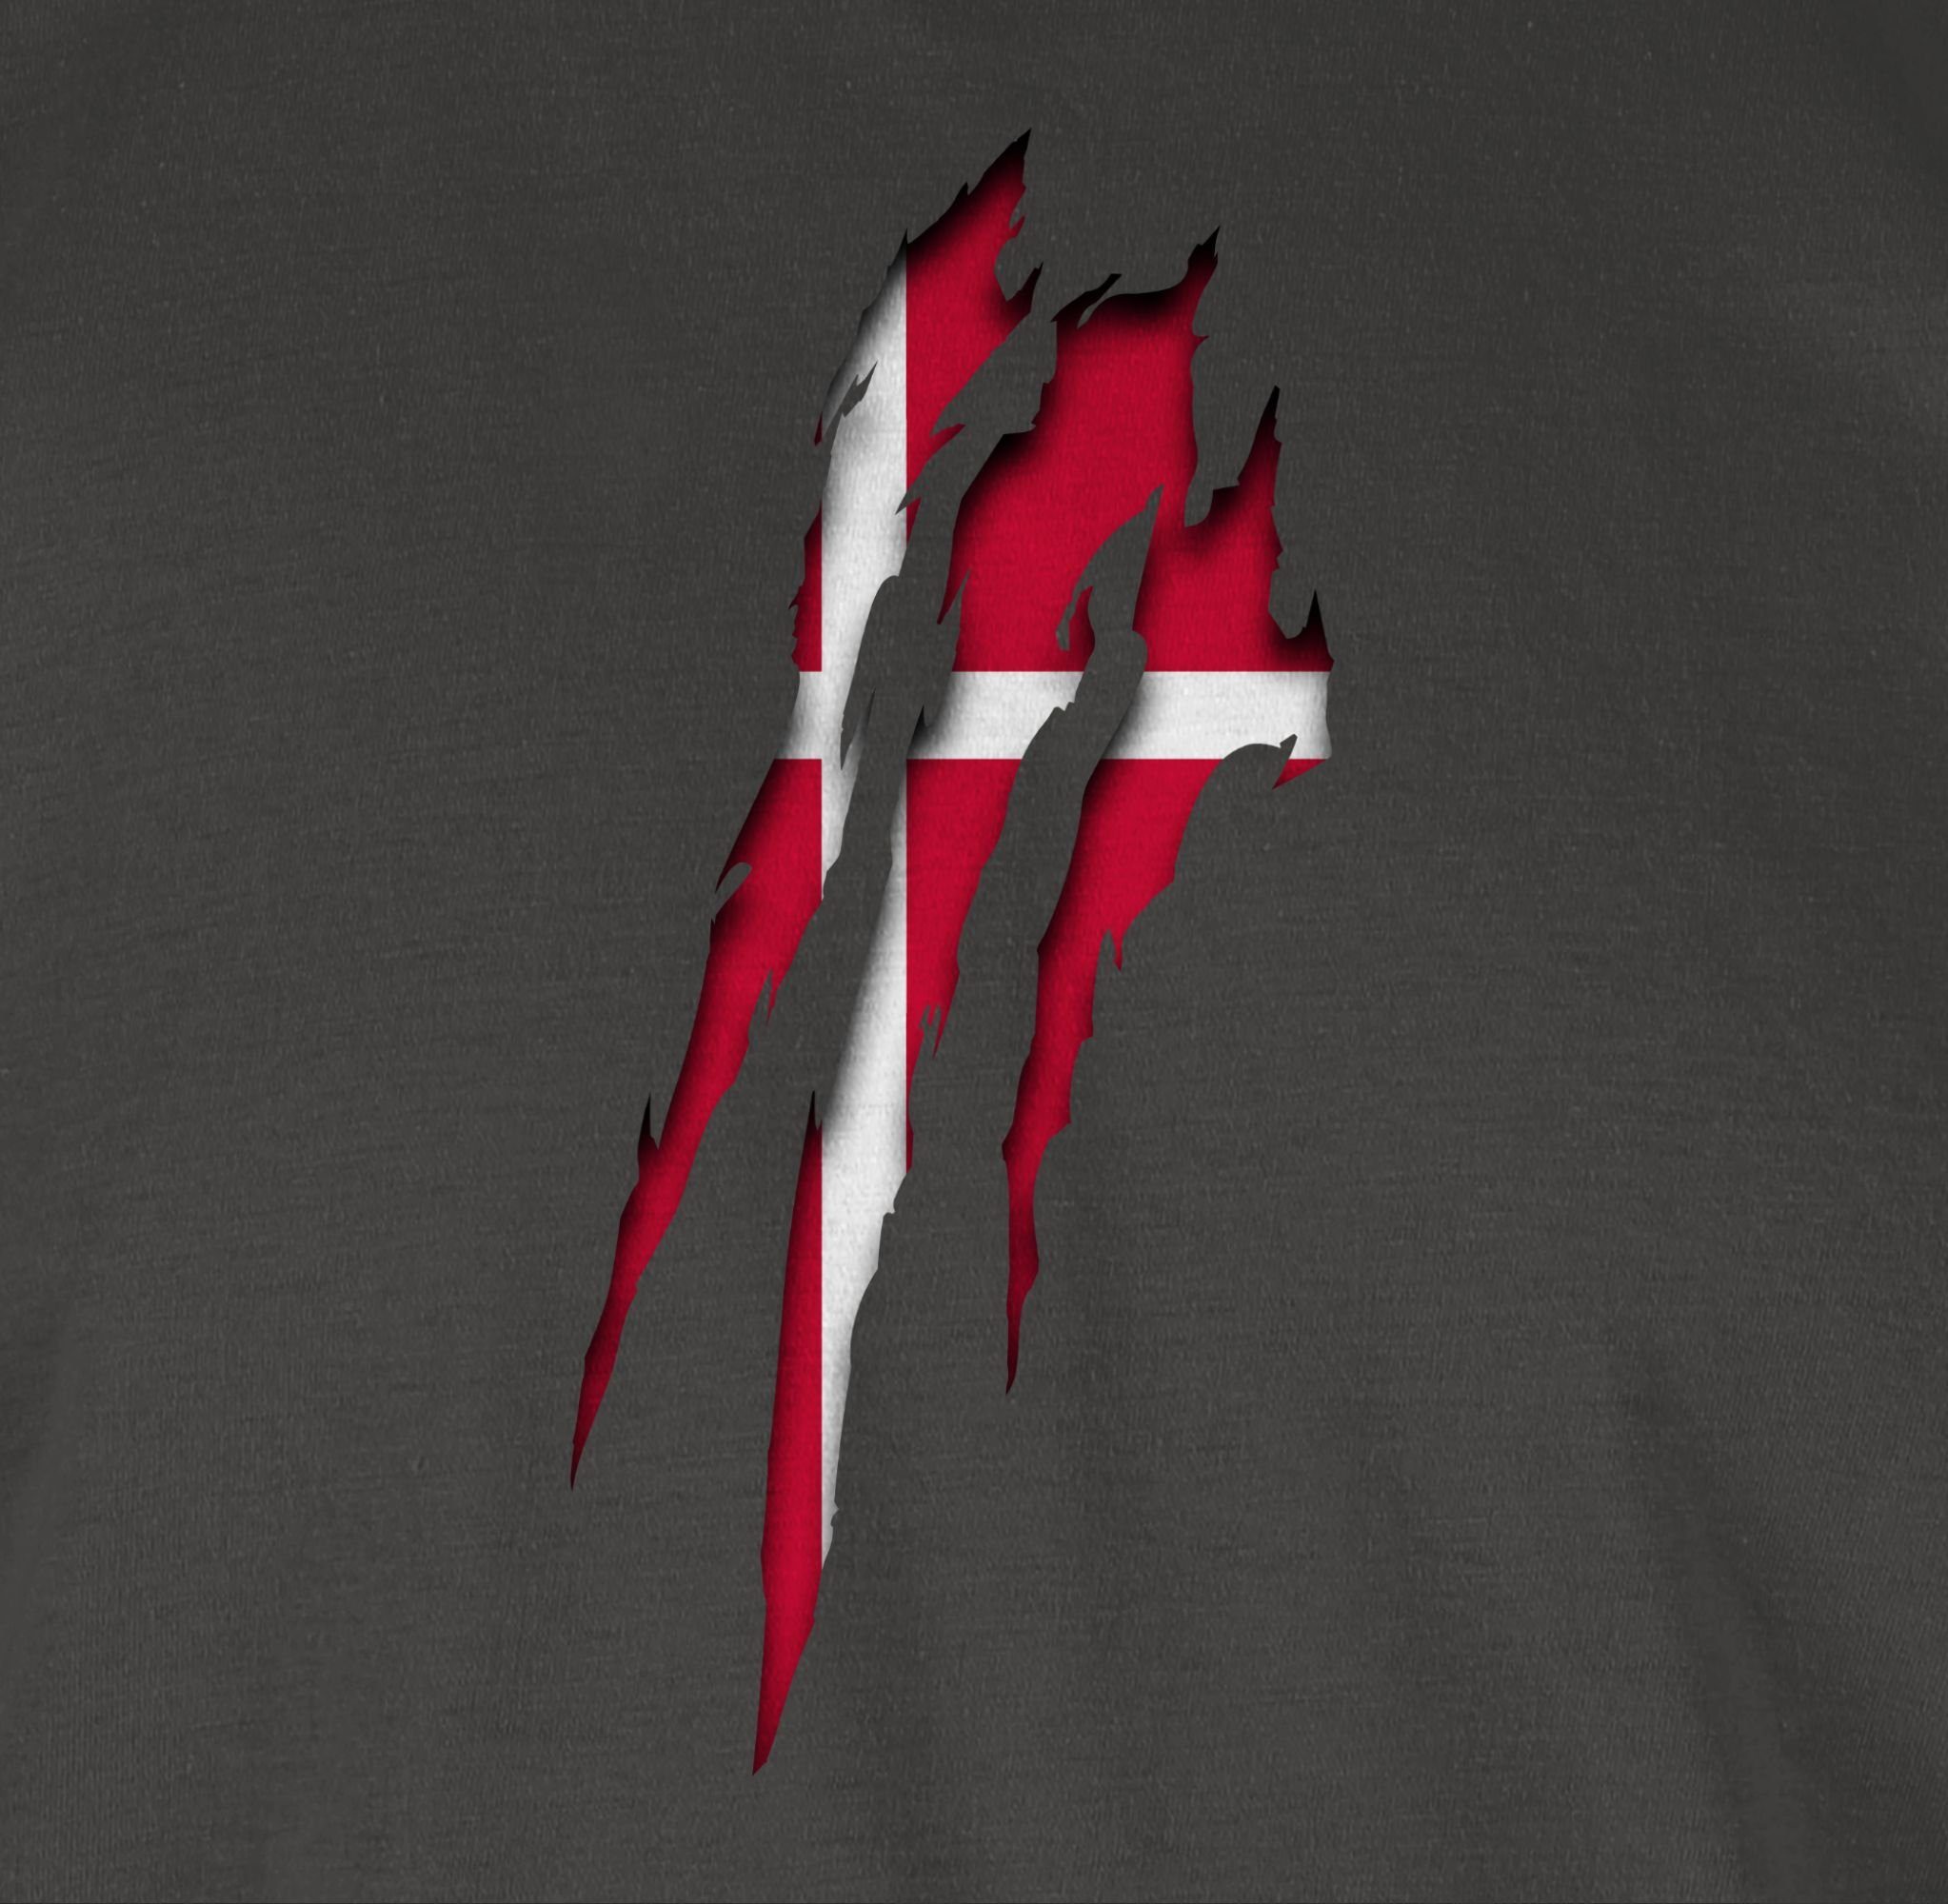 T-Shirt Dänemark Krallenspuren 2024 2 EM Fussball Shirtracer Dunkelgrau